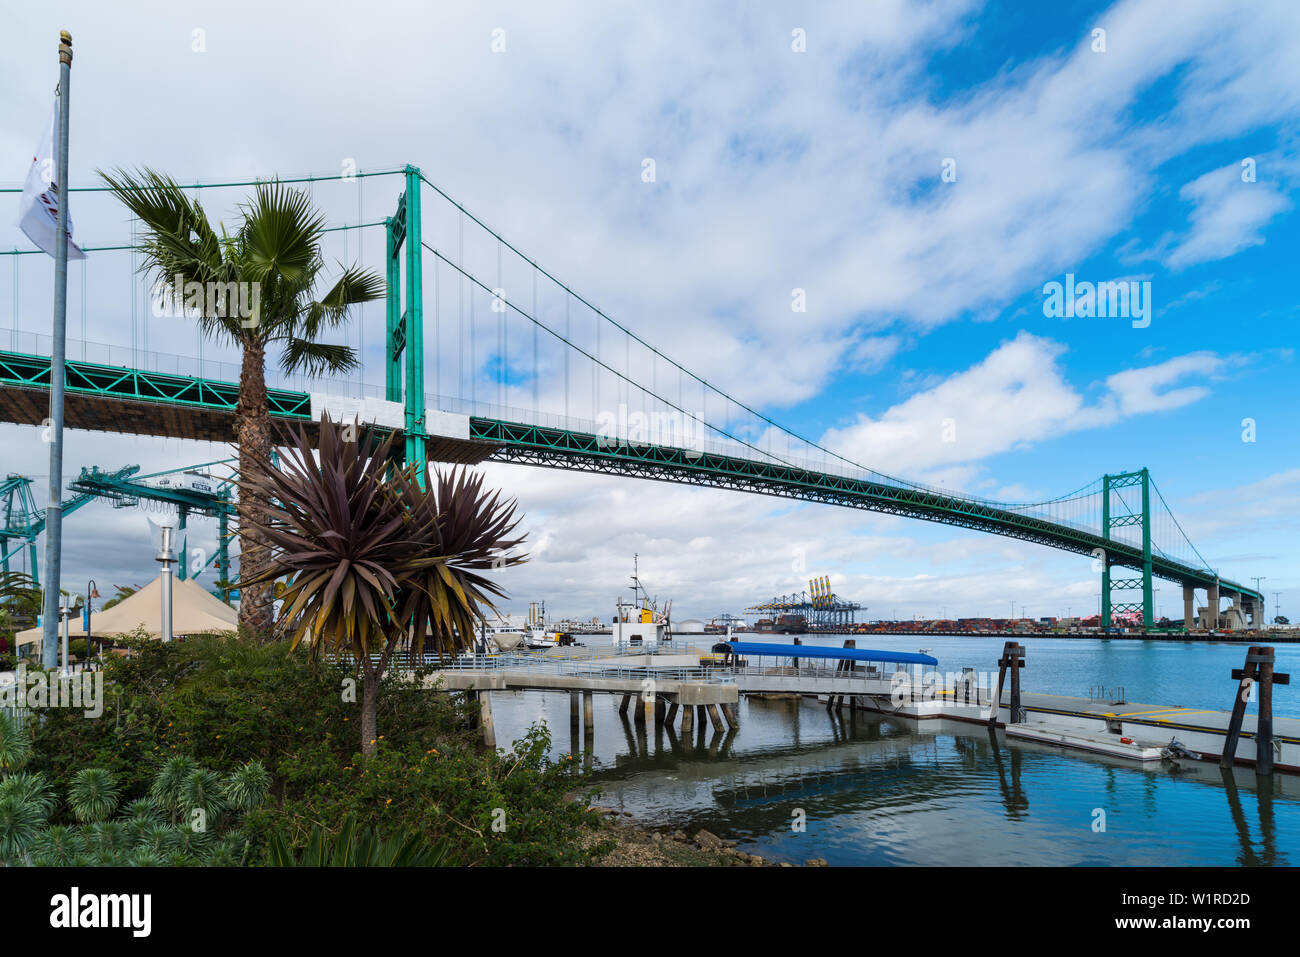 Image montrant une vue sur le port de Los Angeles et le monument Vincent Thomas Bridge. Banque D'Images